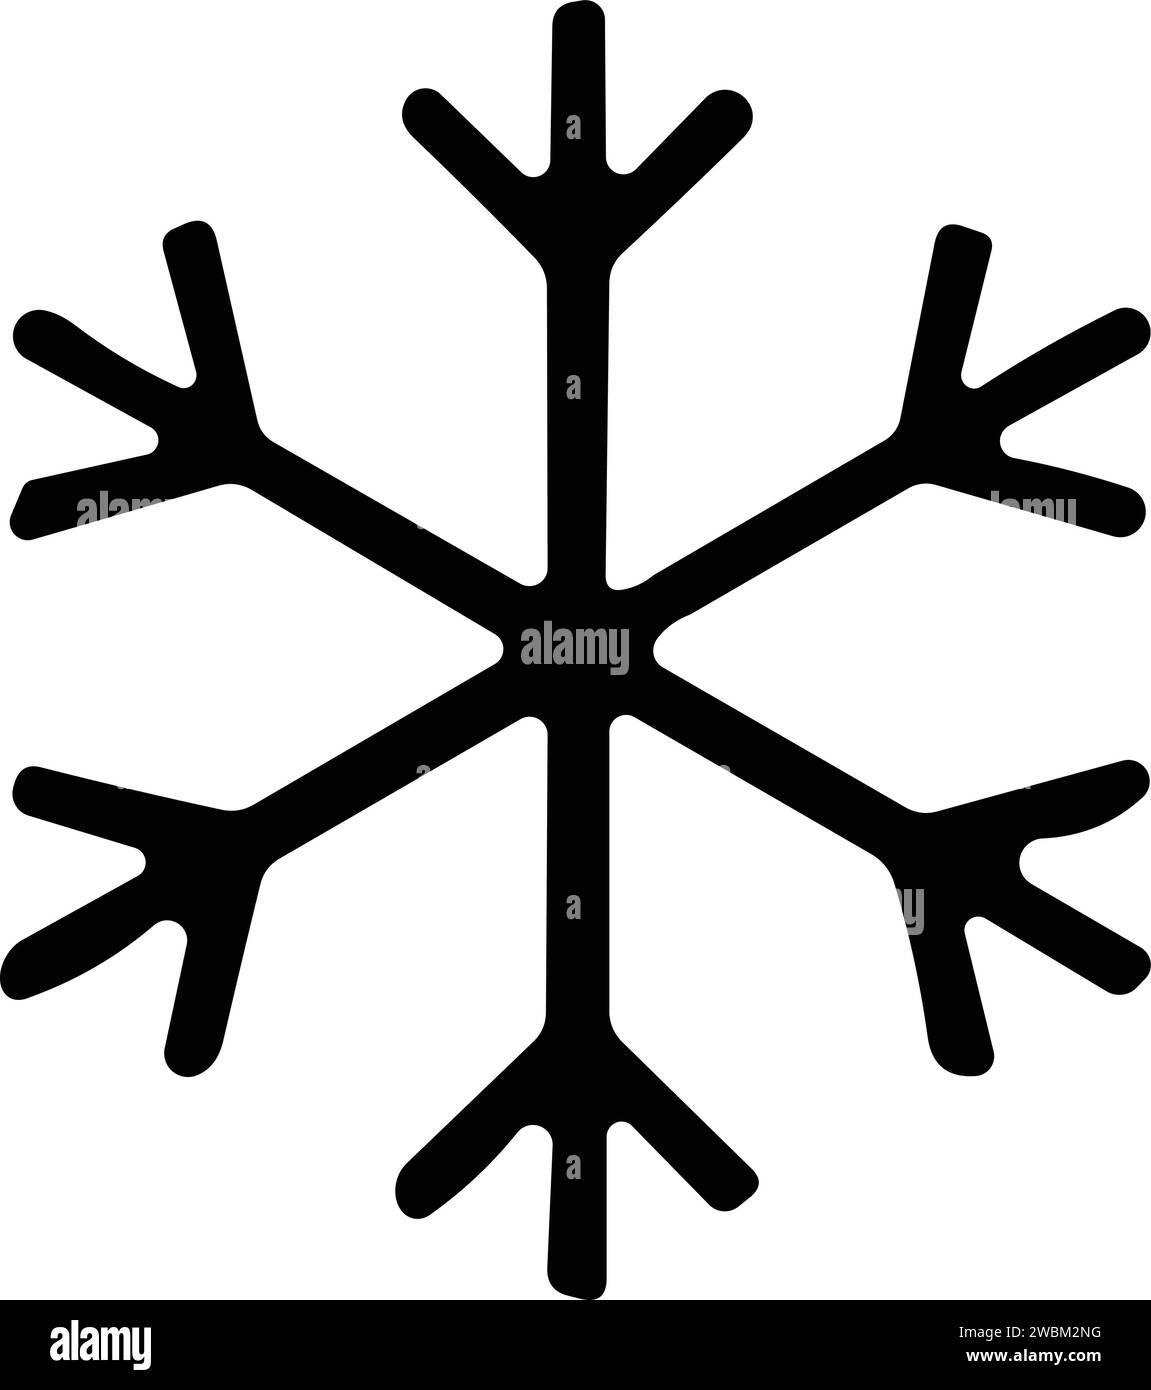 icône de ligne fine flocons de neige. flocon de neige simple, pour rapport, présentation, diagramme, conception web. symbole de glace Illustration de Vecteur